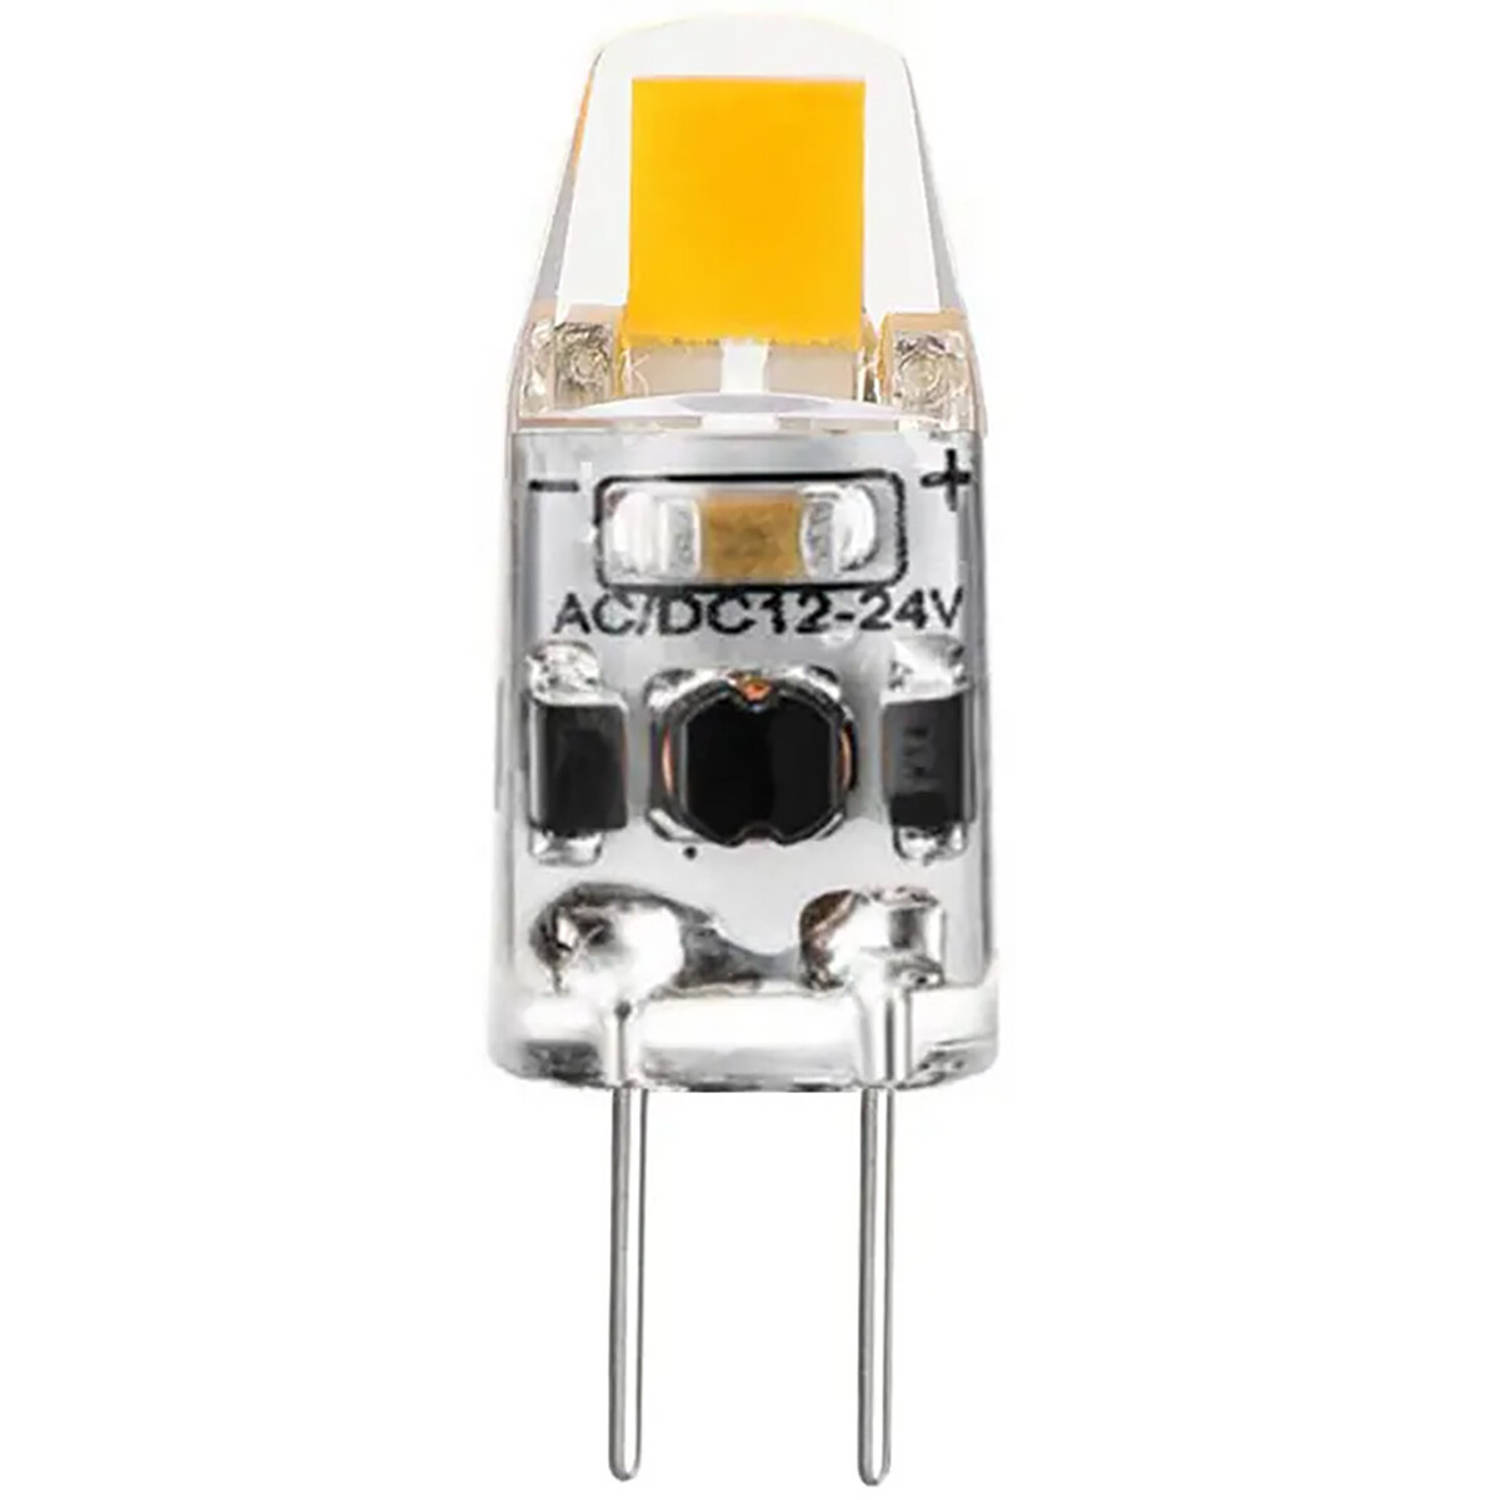 LED Lamp - Velvalux - G4 Fitting - Dimbaar - 2W - Helder/Koud Wit 6000K - 12V Steeklamp Vervangt 20W